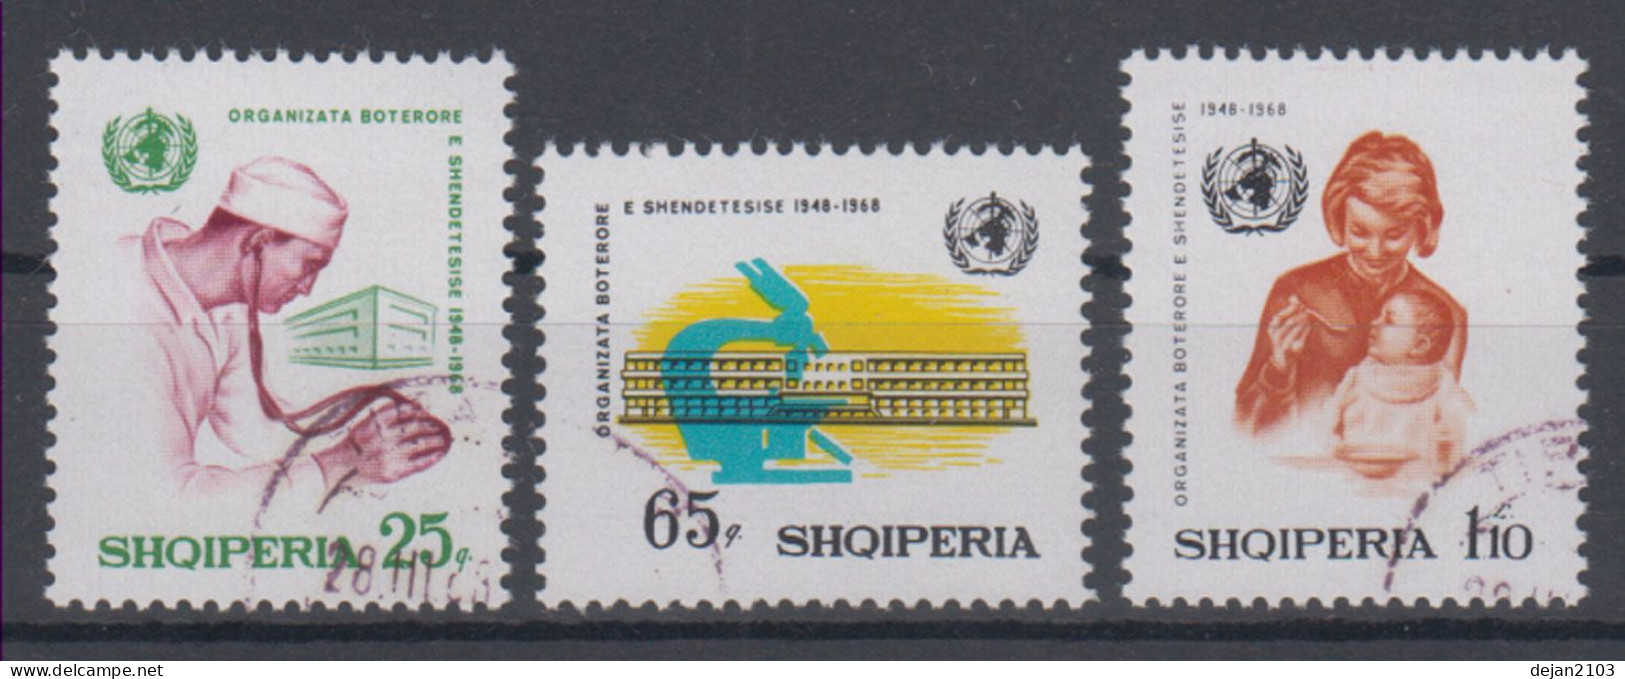 Albania Medicine 1968 USED - Albania